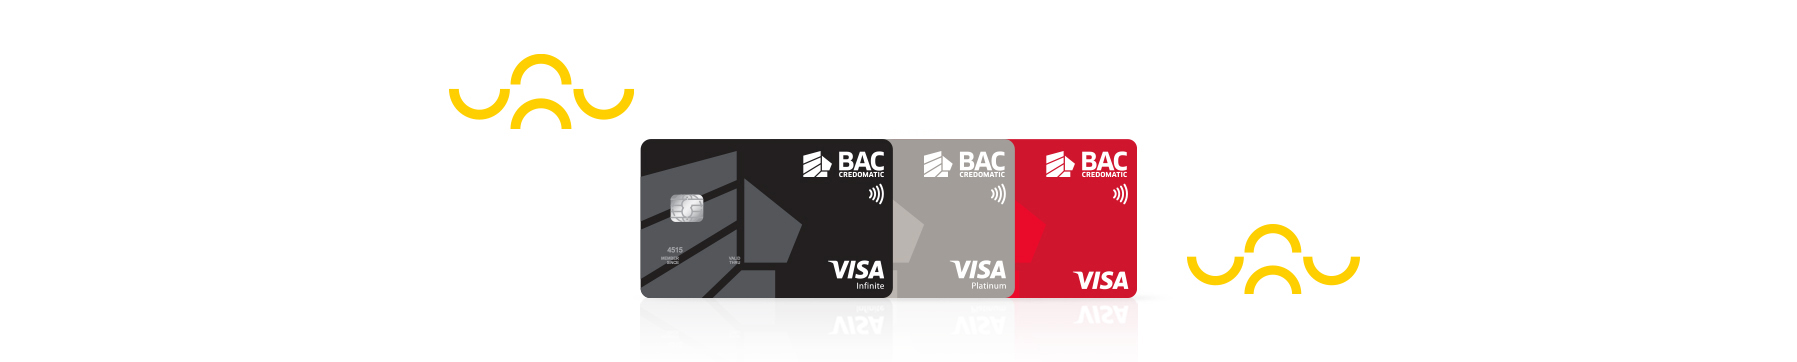 Banner-promocional-Visa-CATAR-02.jpg